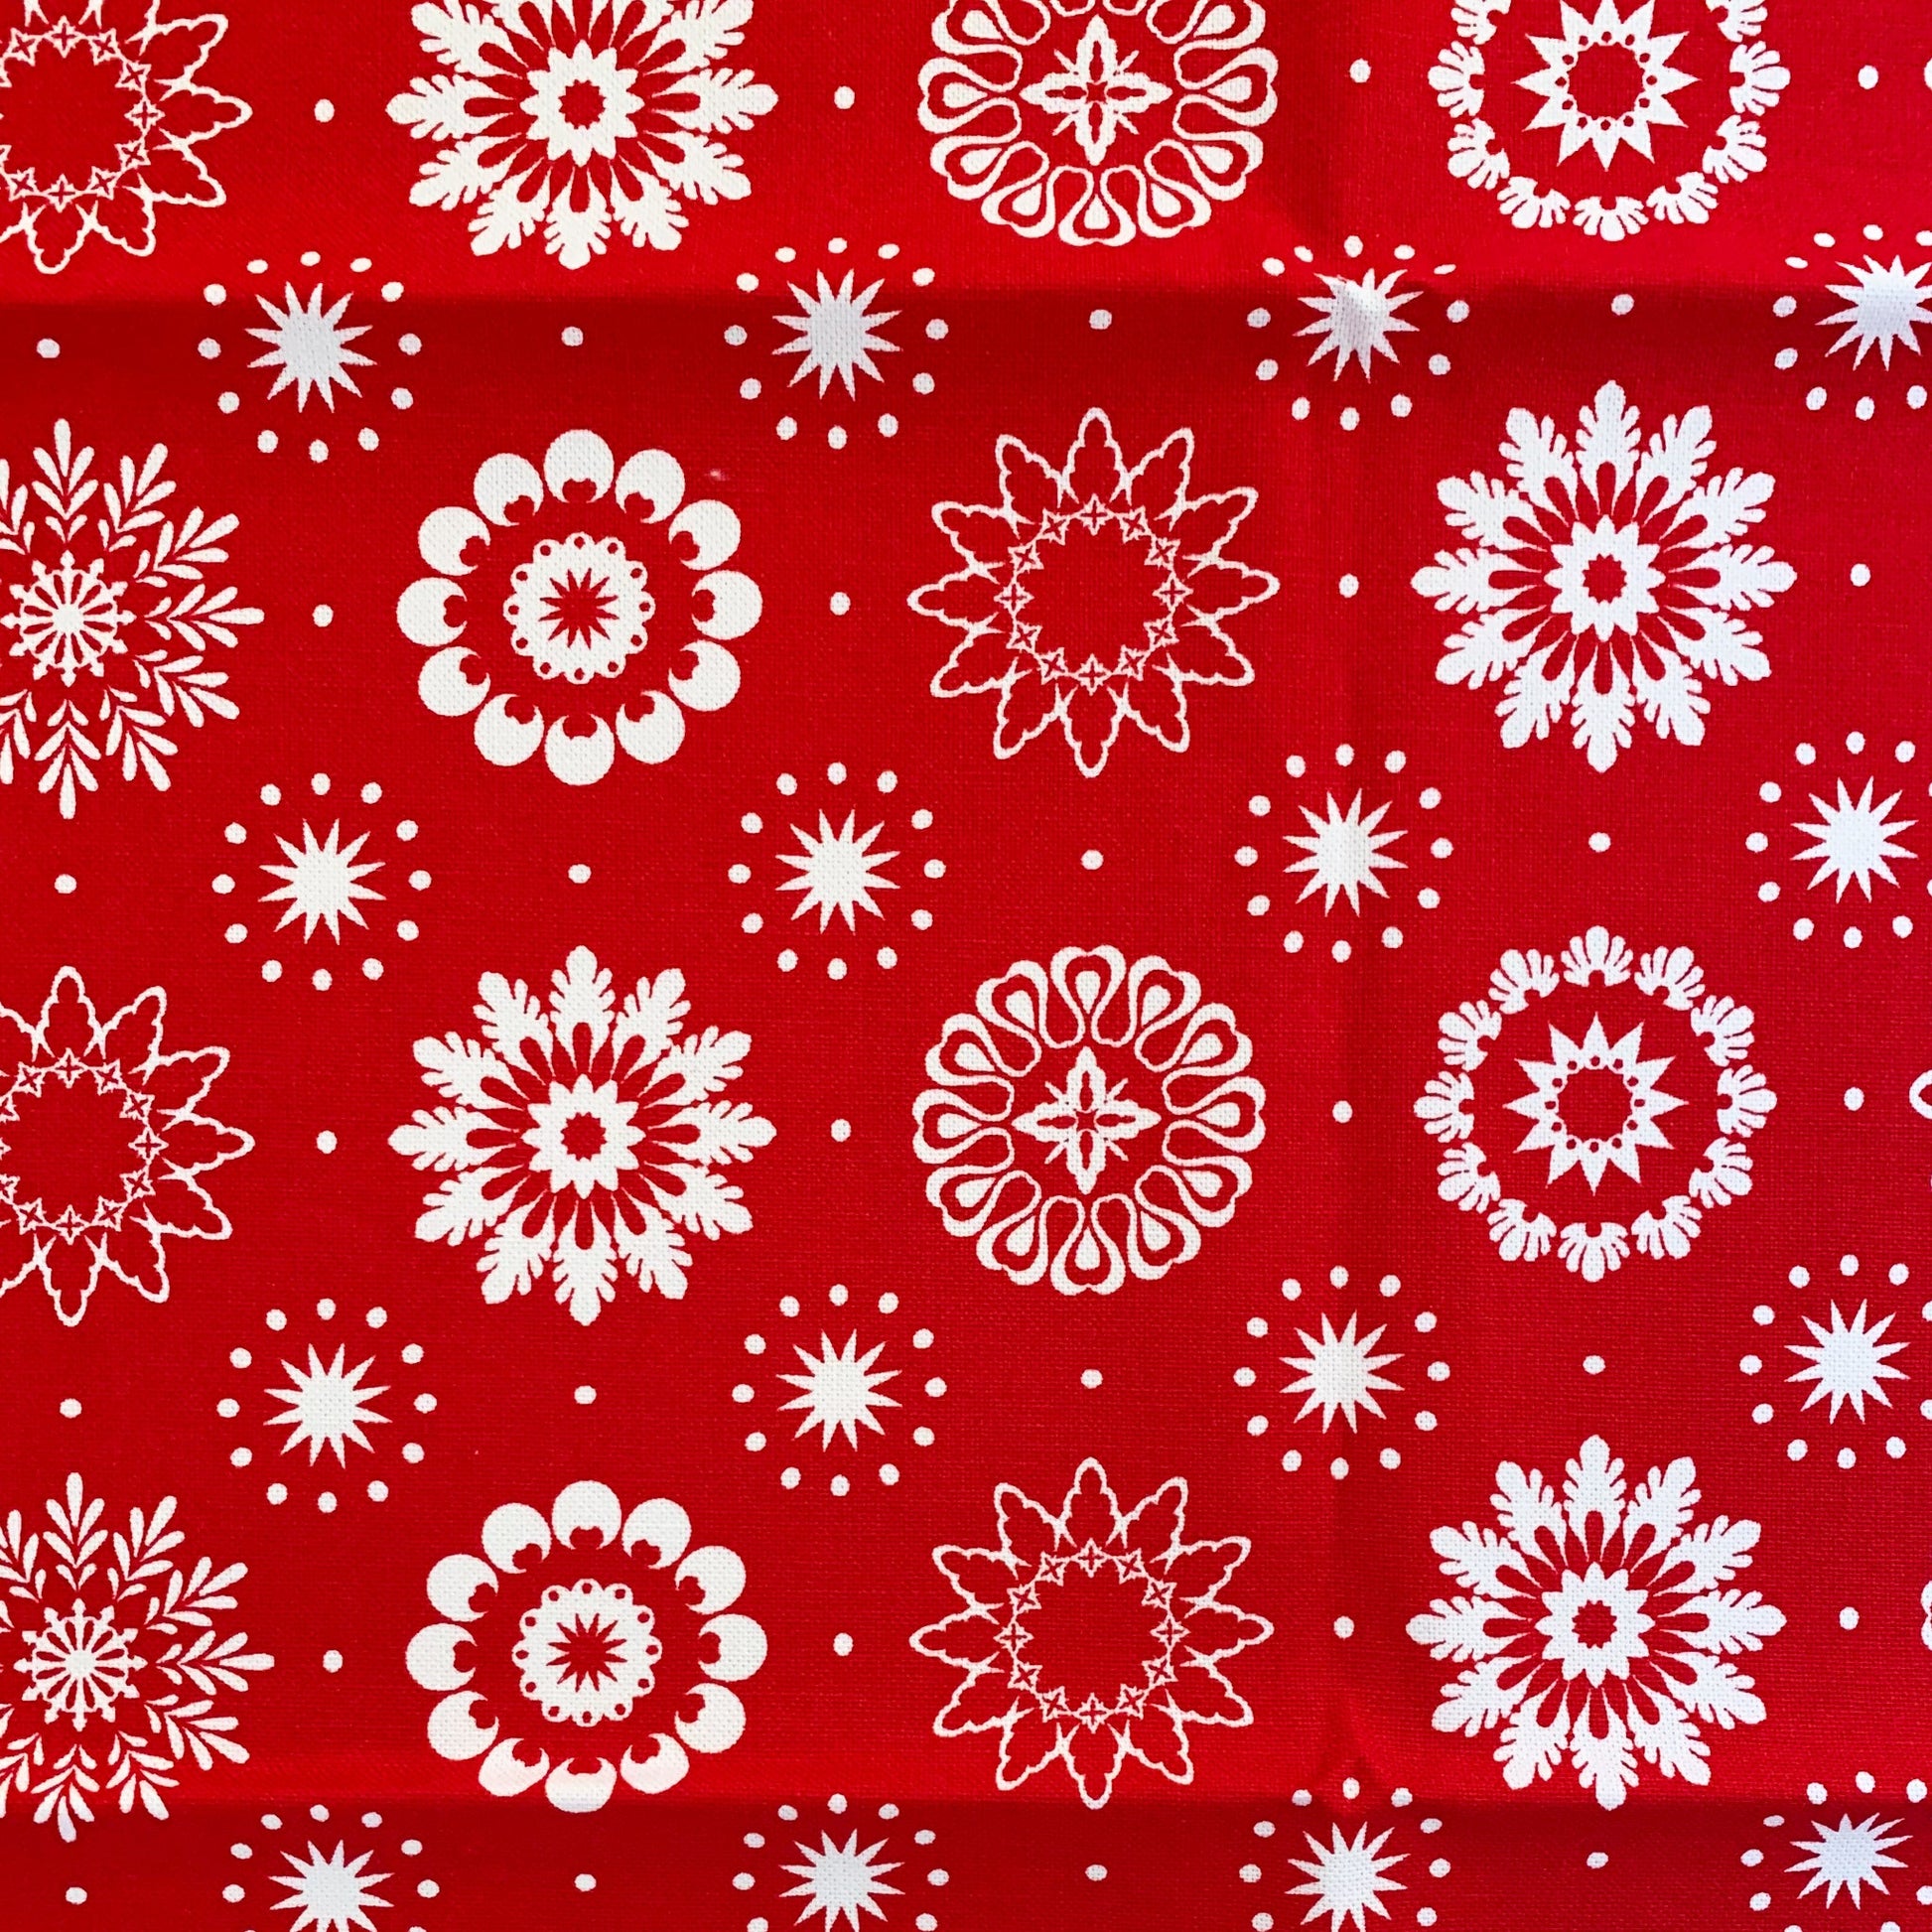 Napkins - Crisp and Dene - Set of 4 Napkins - Crisp & Dene Christmas Snowflake